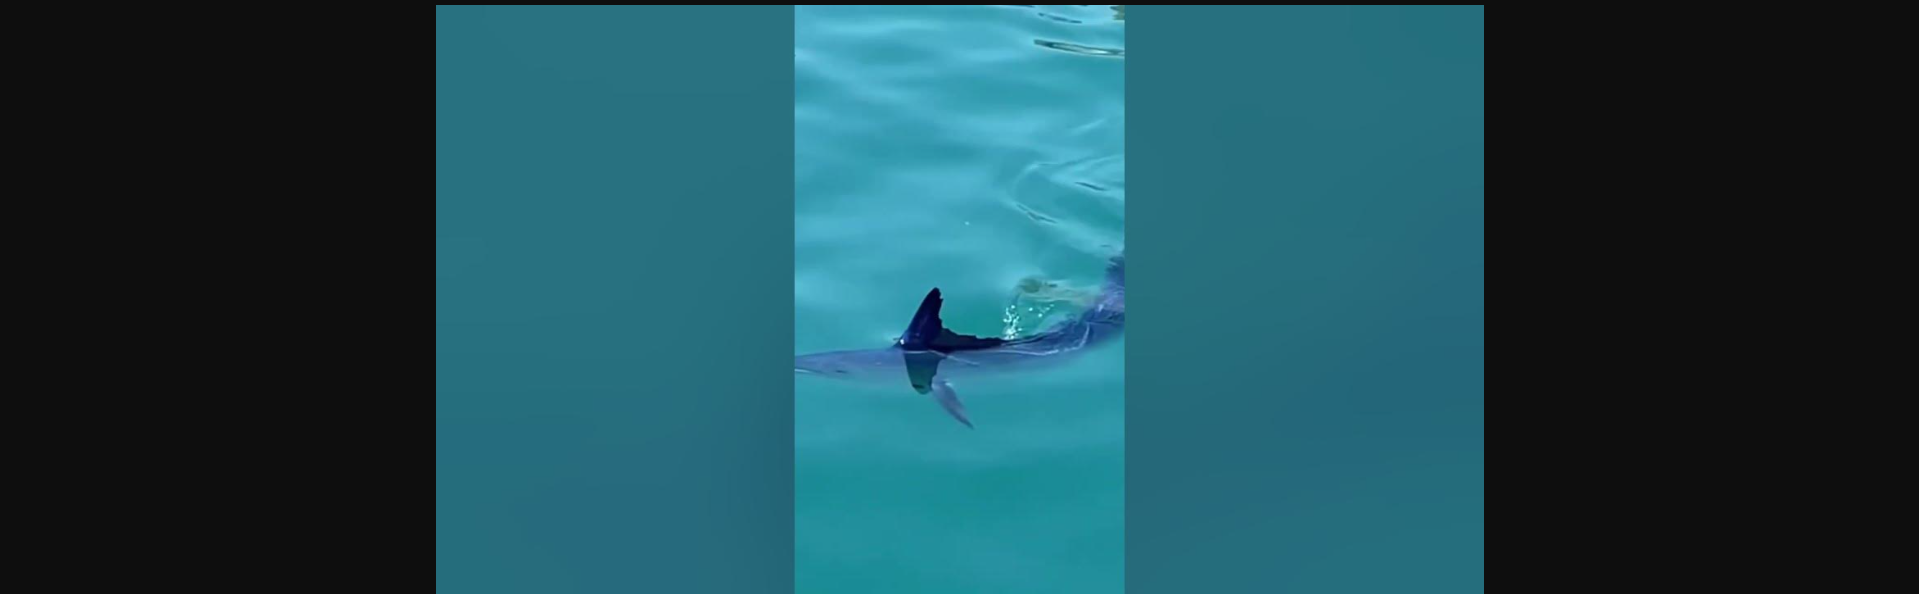 Μπλε βασιλική ζαργάνα εντυπωσίασε μικρούς και μεγάλους σε παραλία του Ναυπλίου (βίντεο)